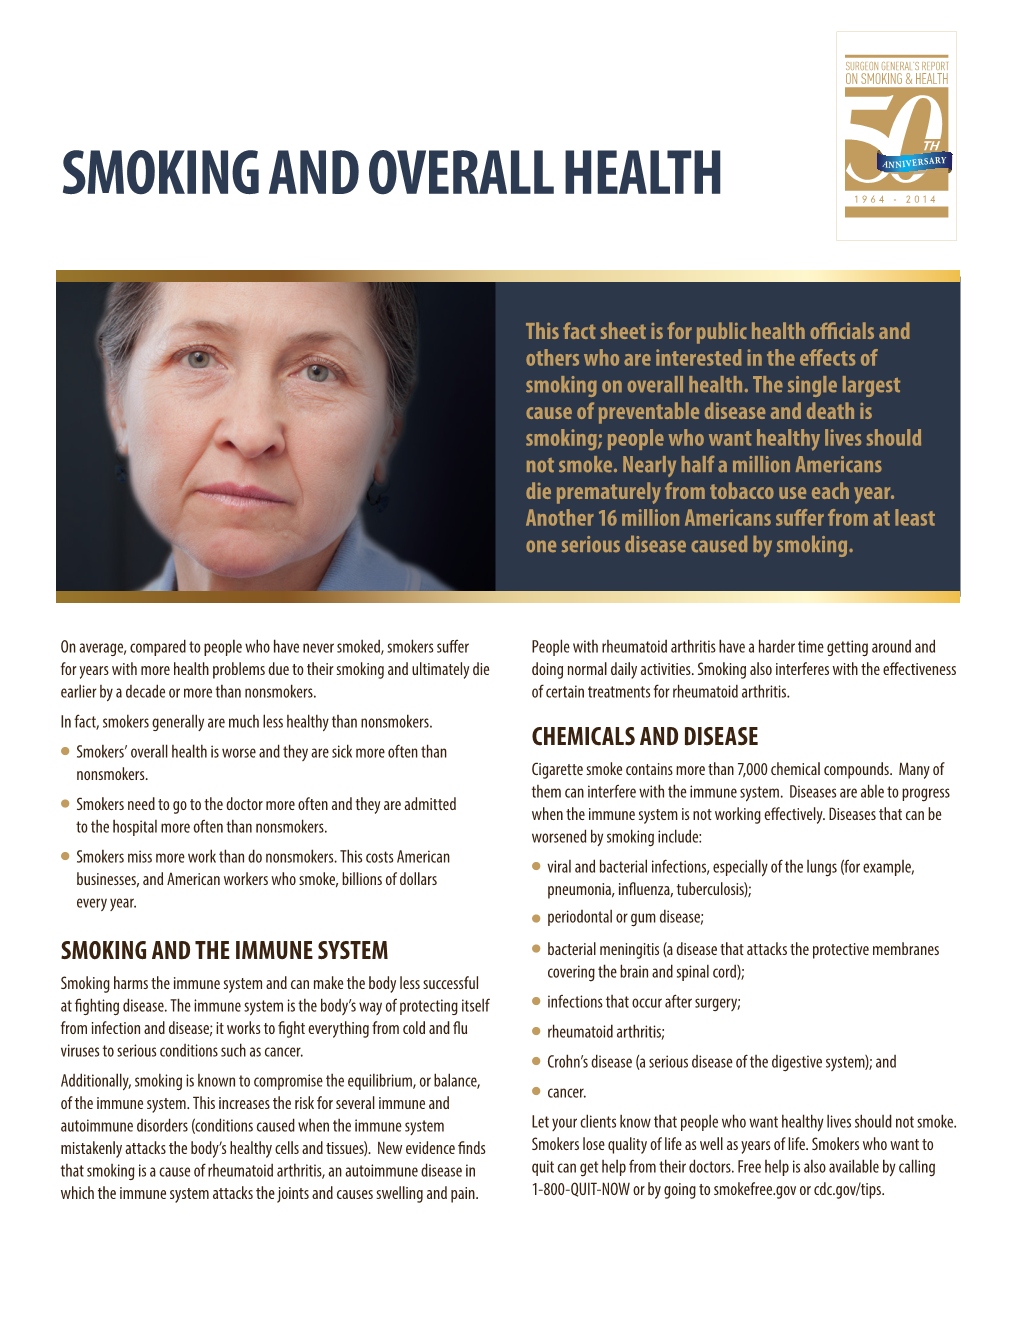 Smoking and Overall Health